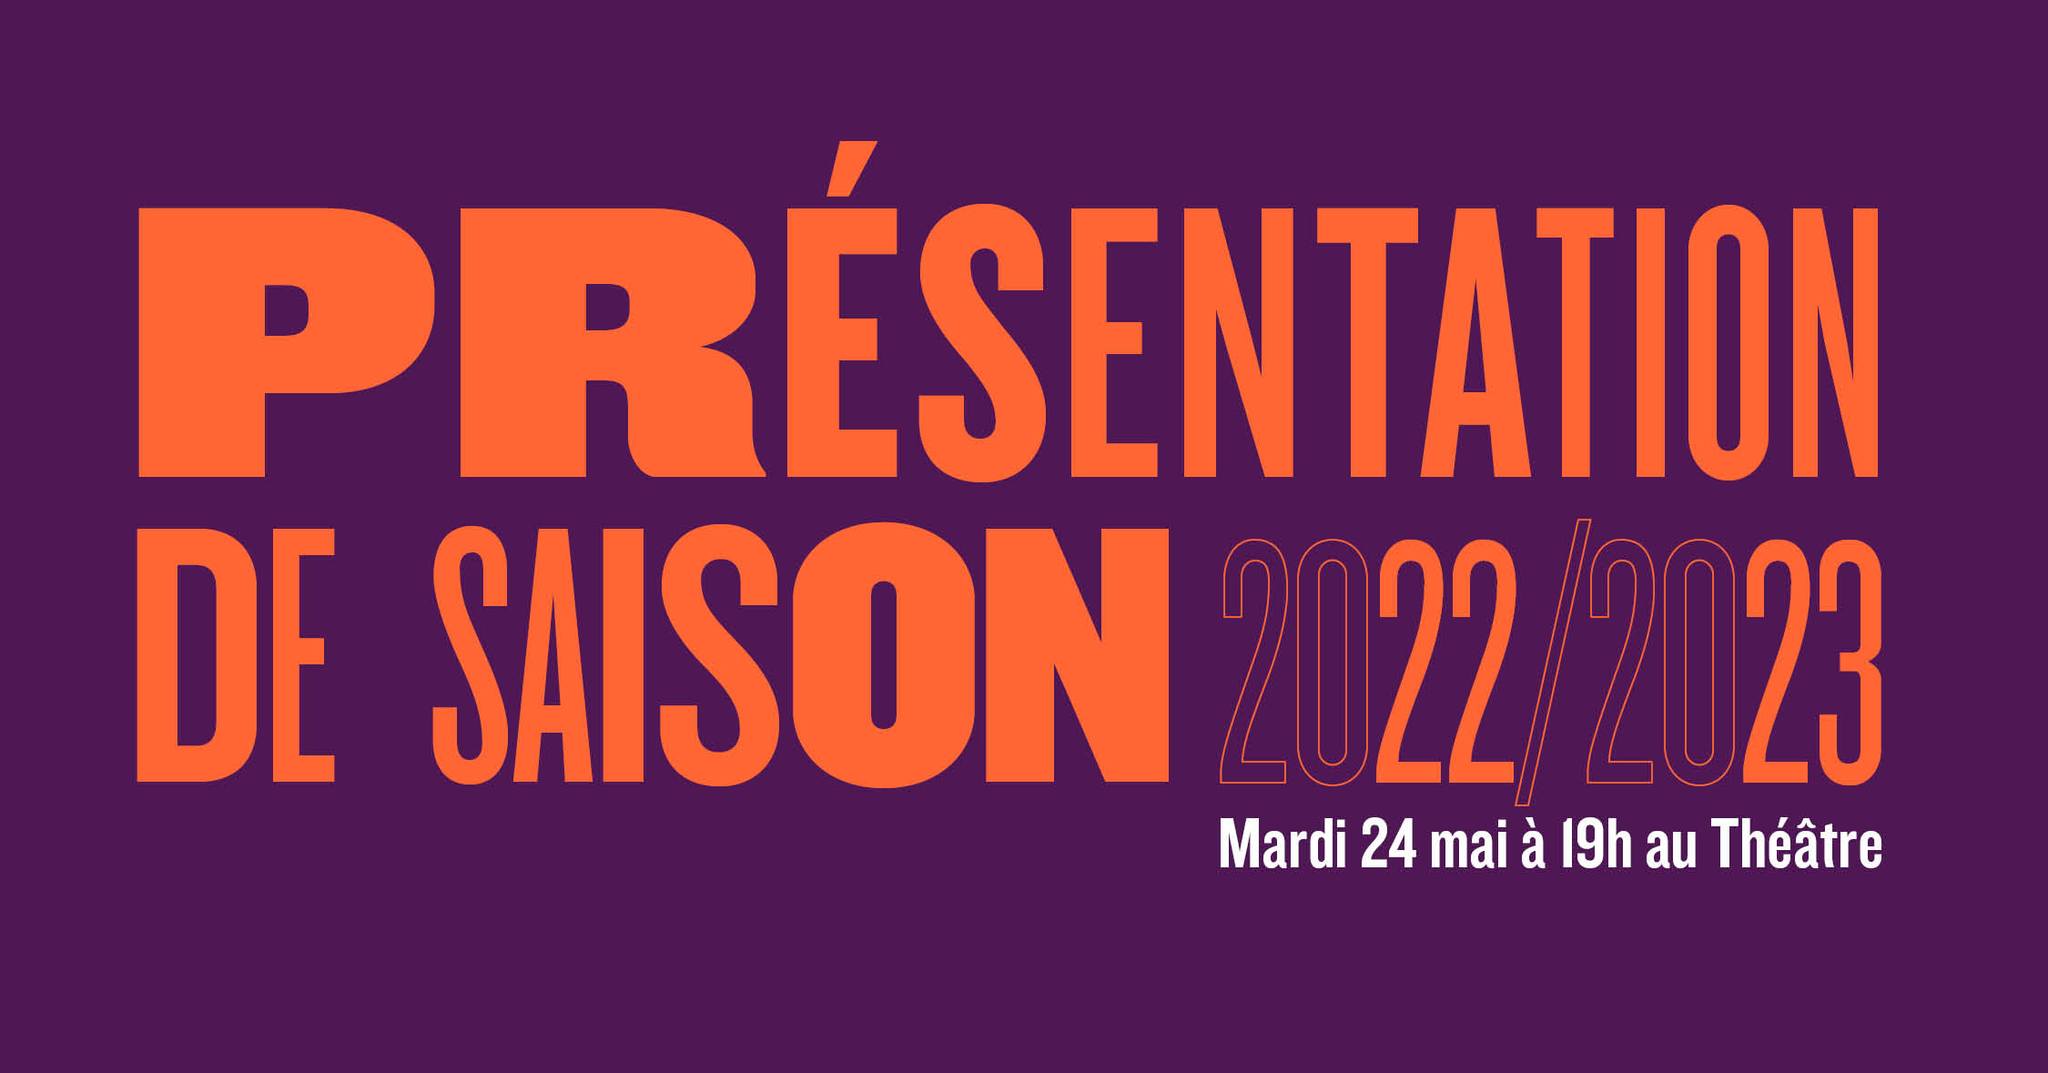 Théâtre de la Renaissance à Oullins, saison 2022/2023